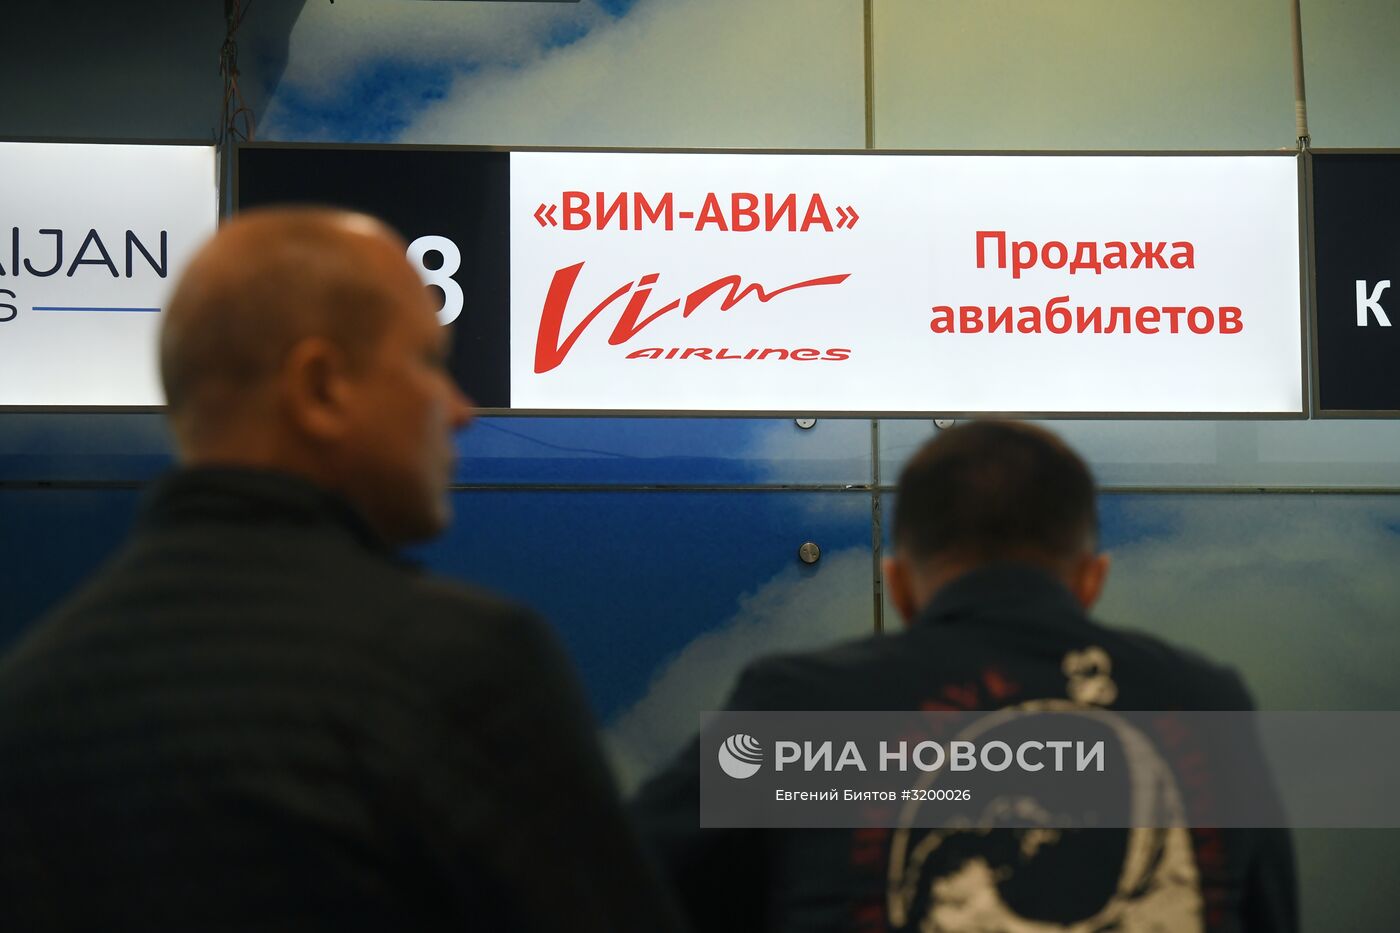 Авиакомпания "ВИМ-Авиа" прекратила чартерные рейсы